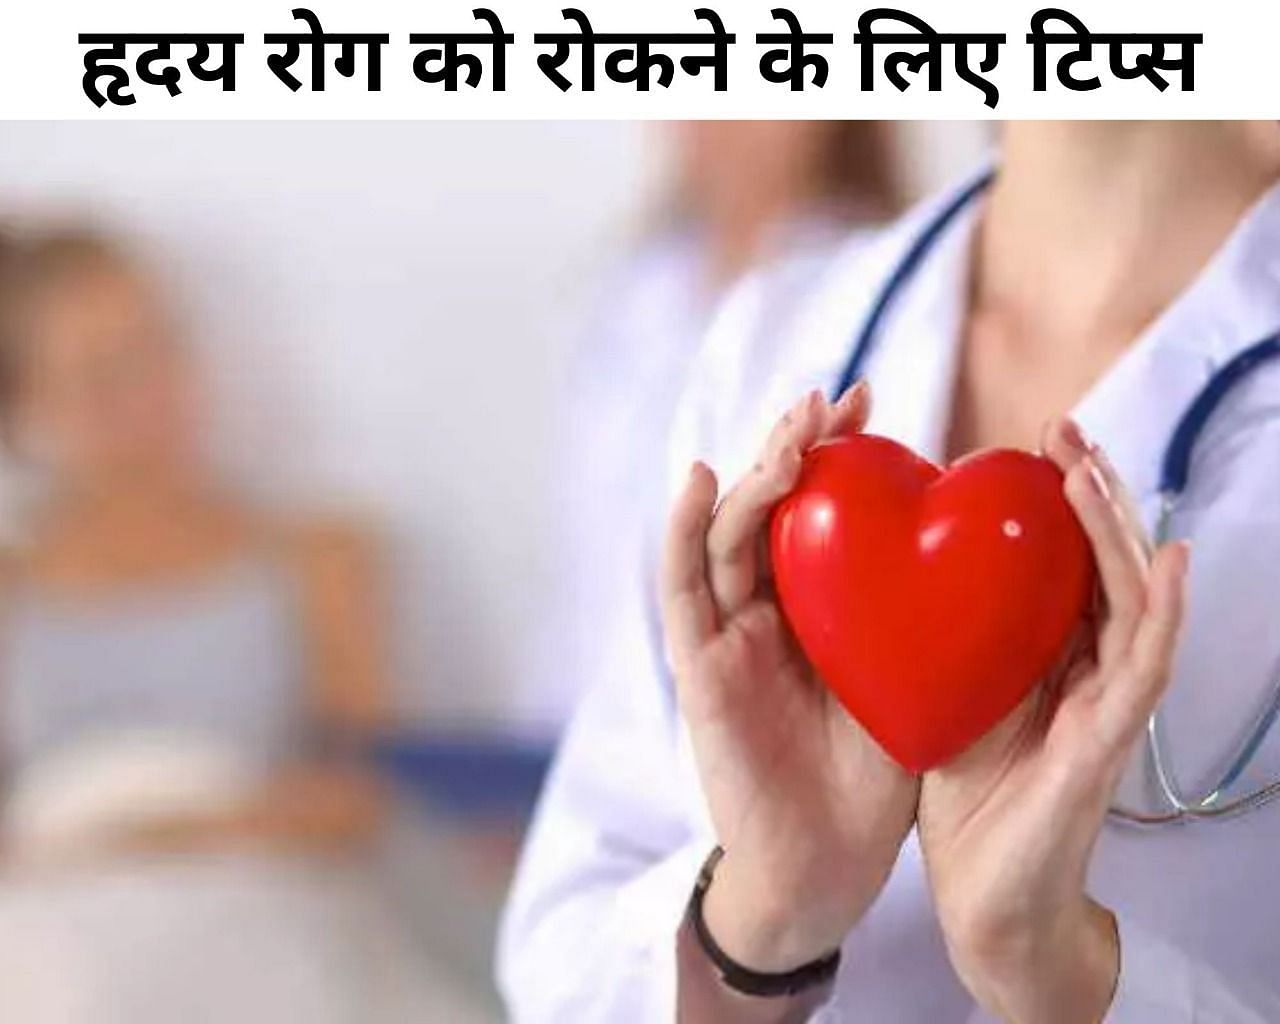 हृदय रोग को रोकने के लिए 7 टिप्स (फोटो - sportskeedaहिंदी)